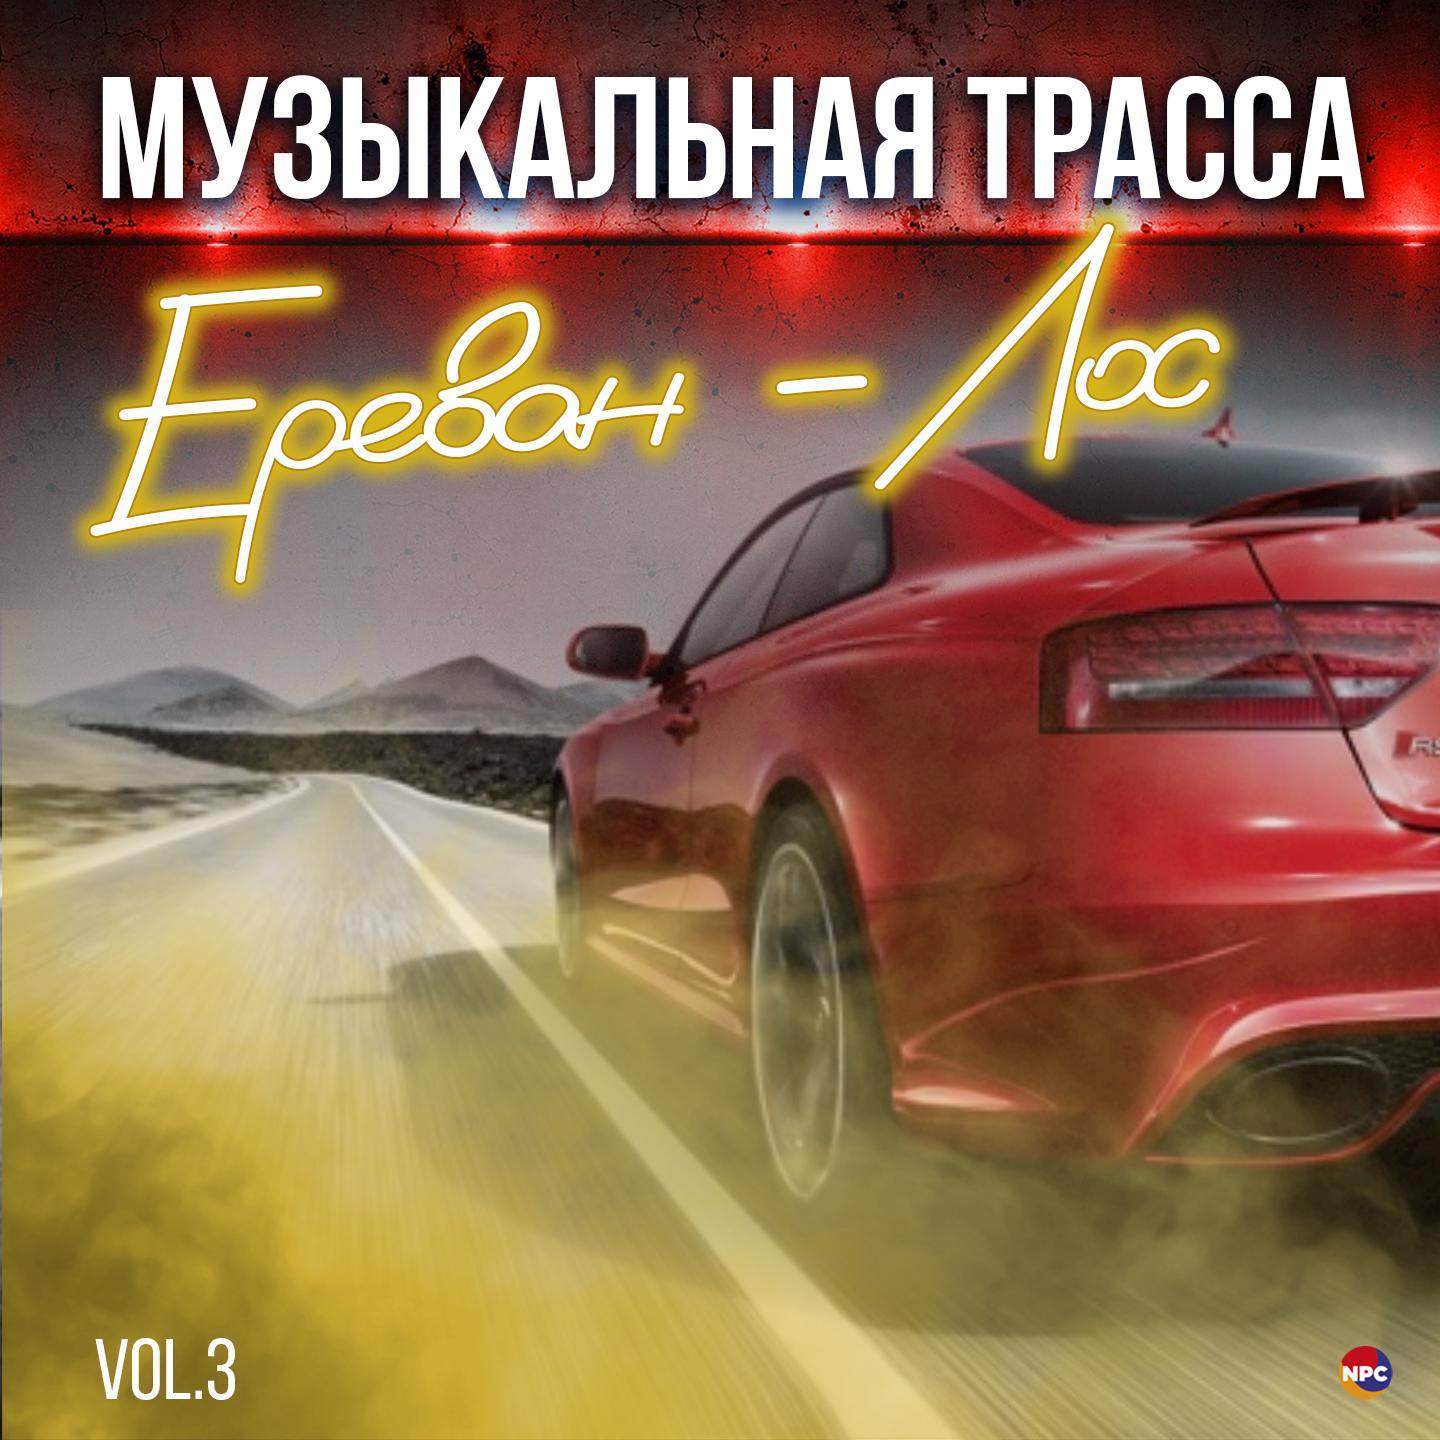 Постер альбома Музыкальная трасса Ереван - Лос, Vol. 3